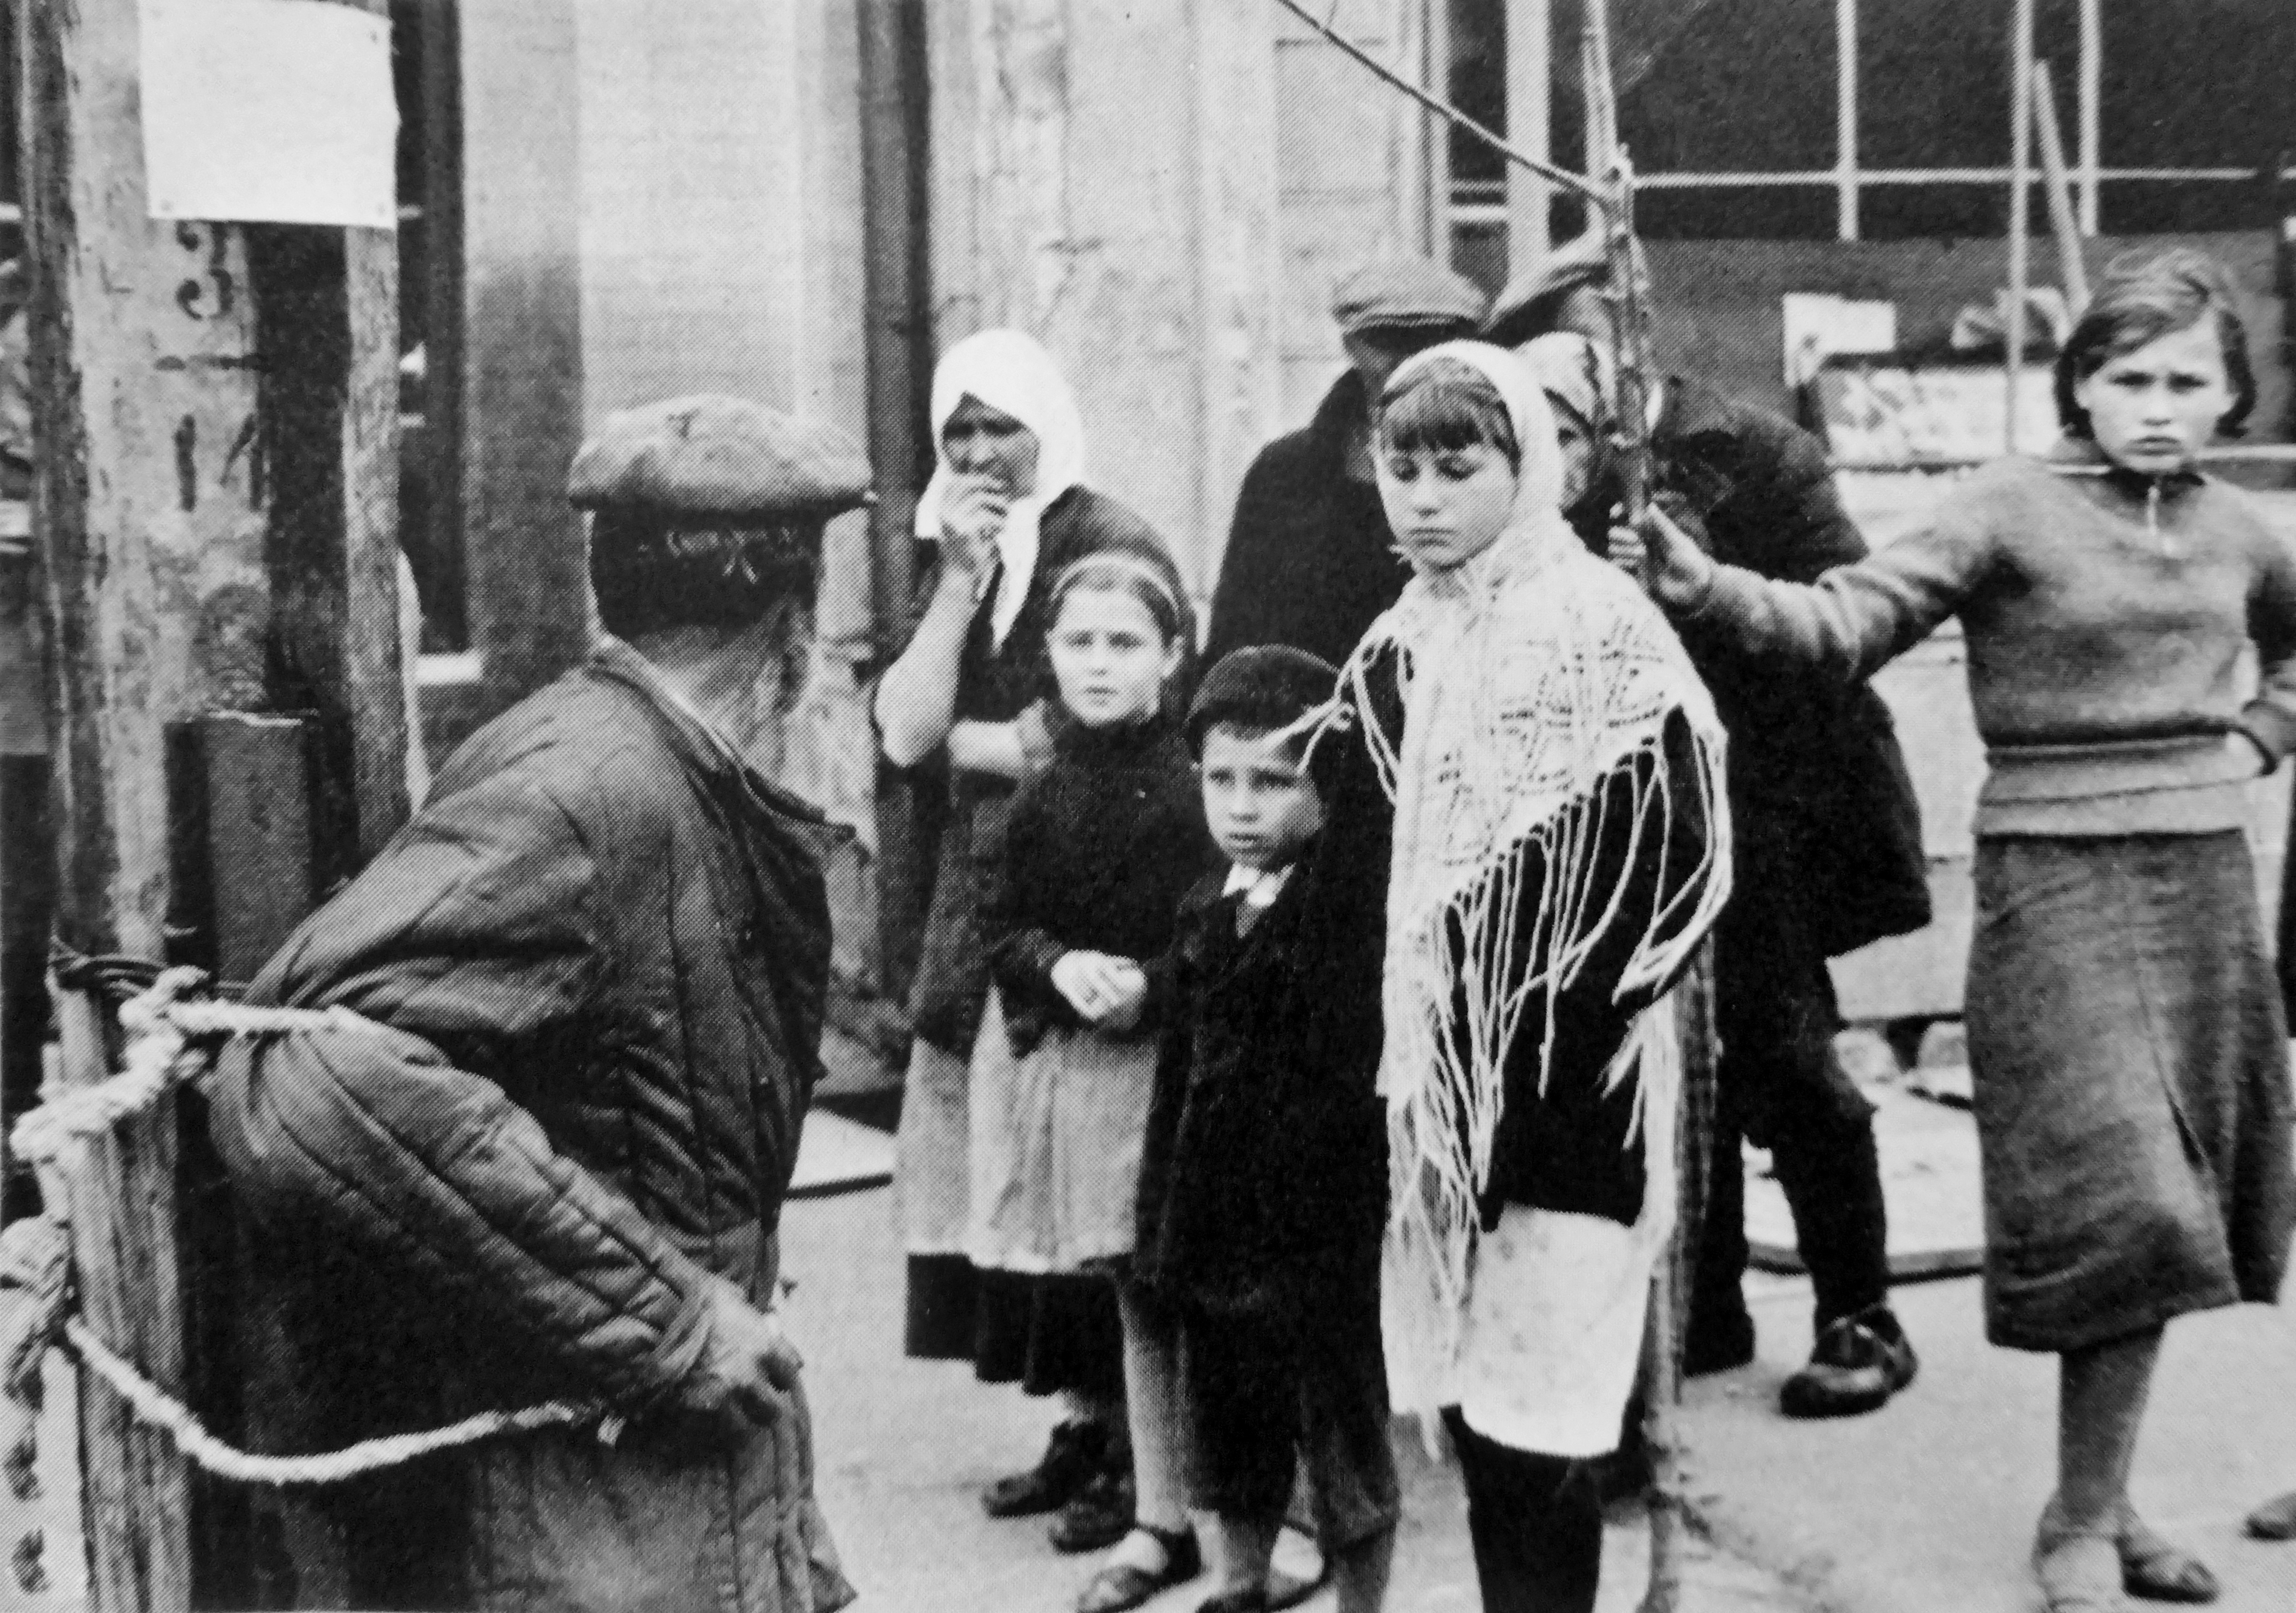 1941. Прохожие на улице оккупированного города на Украине смотрят на мужчину, привязанного немецкими солдатами к столбу